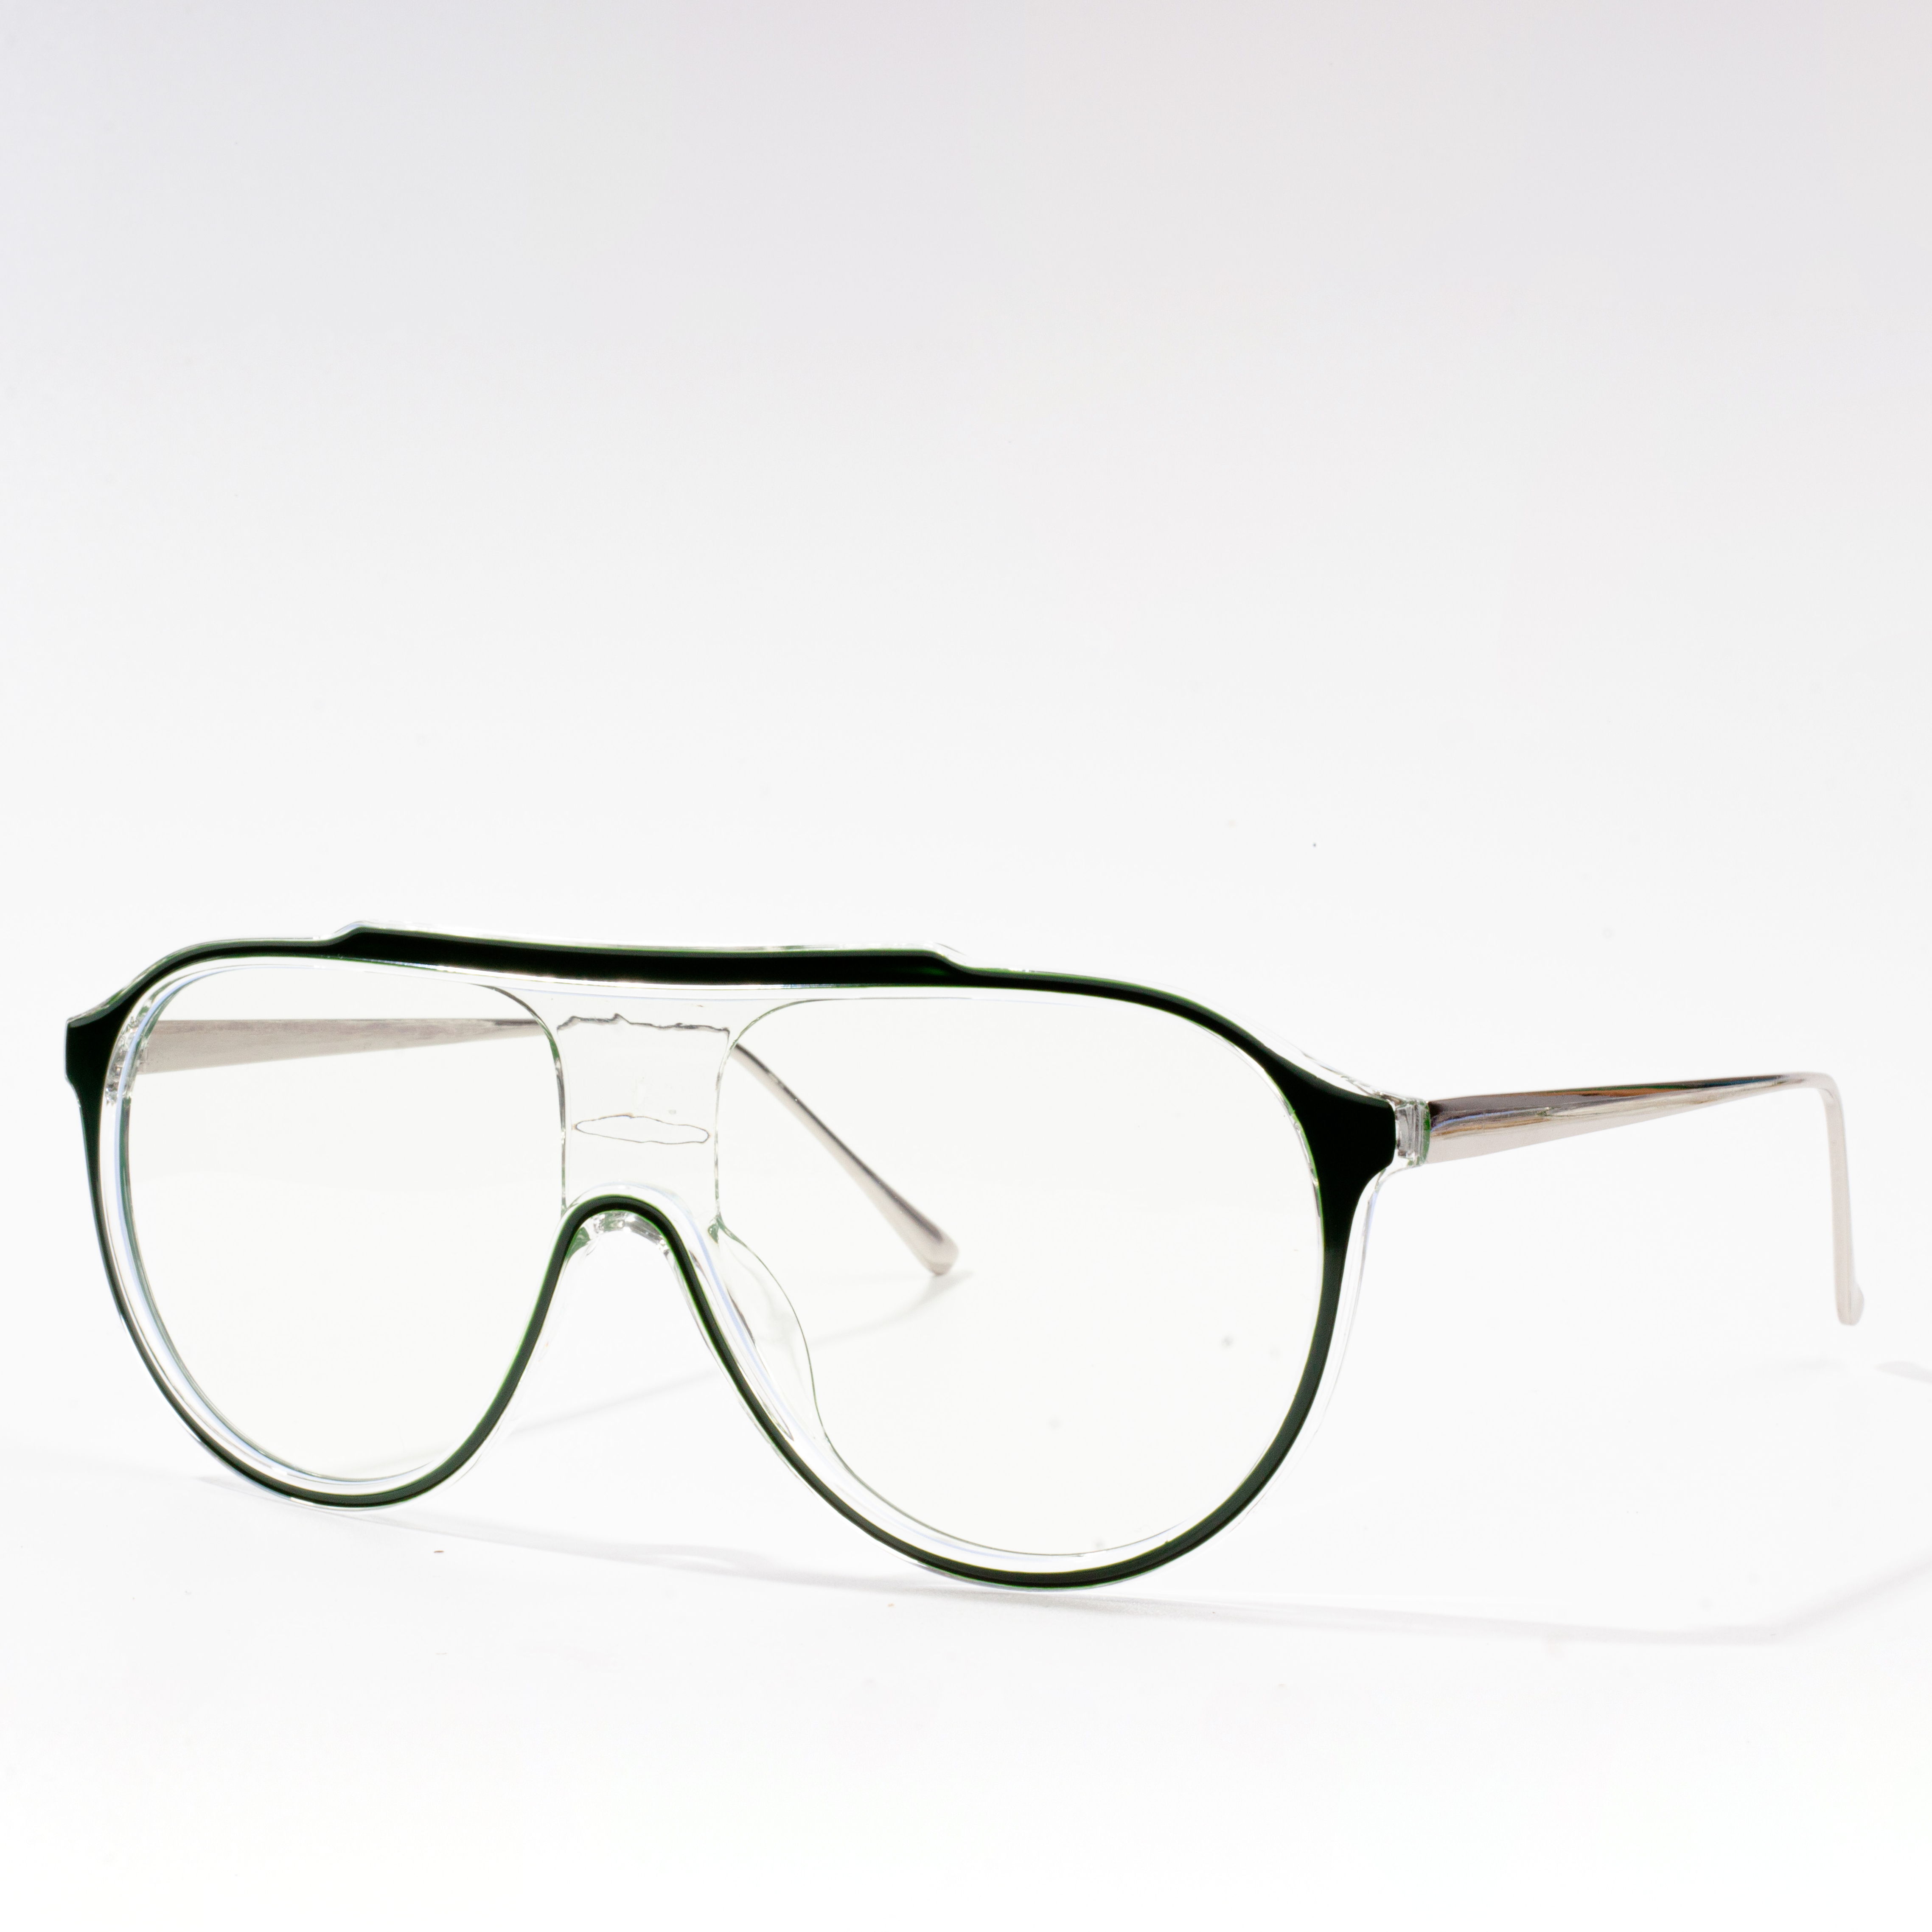 فریم عینک های طراحی شده